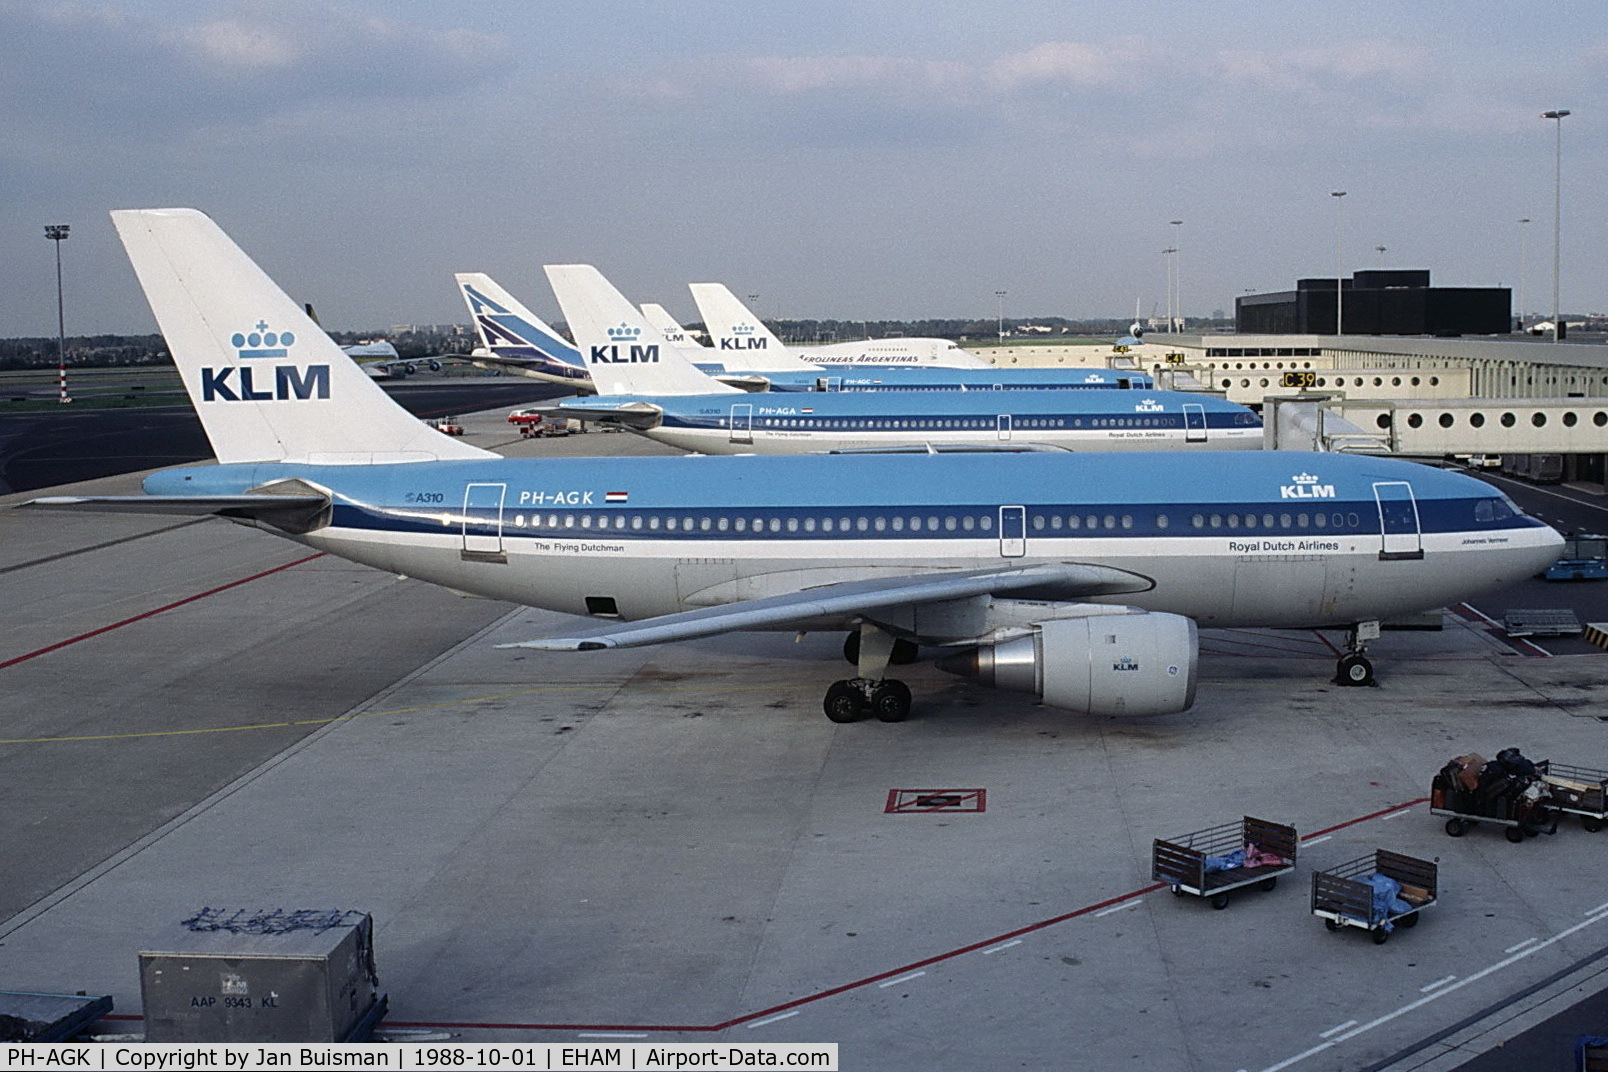 PH-AGK, 1985 Airbus A310-203 C/N 394, KLM